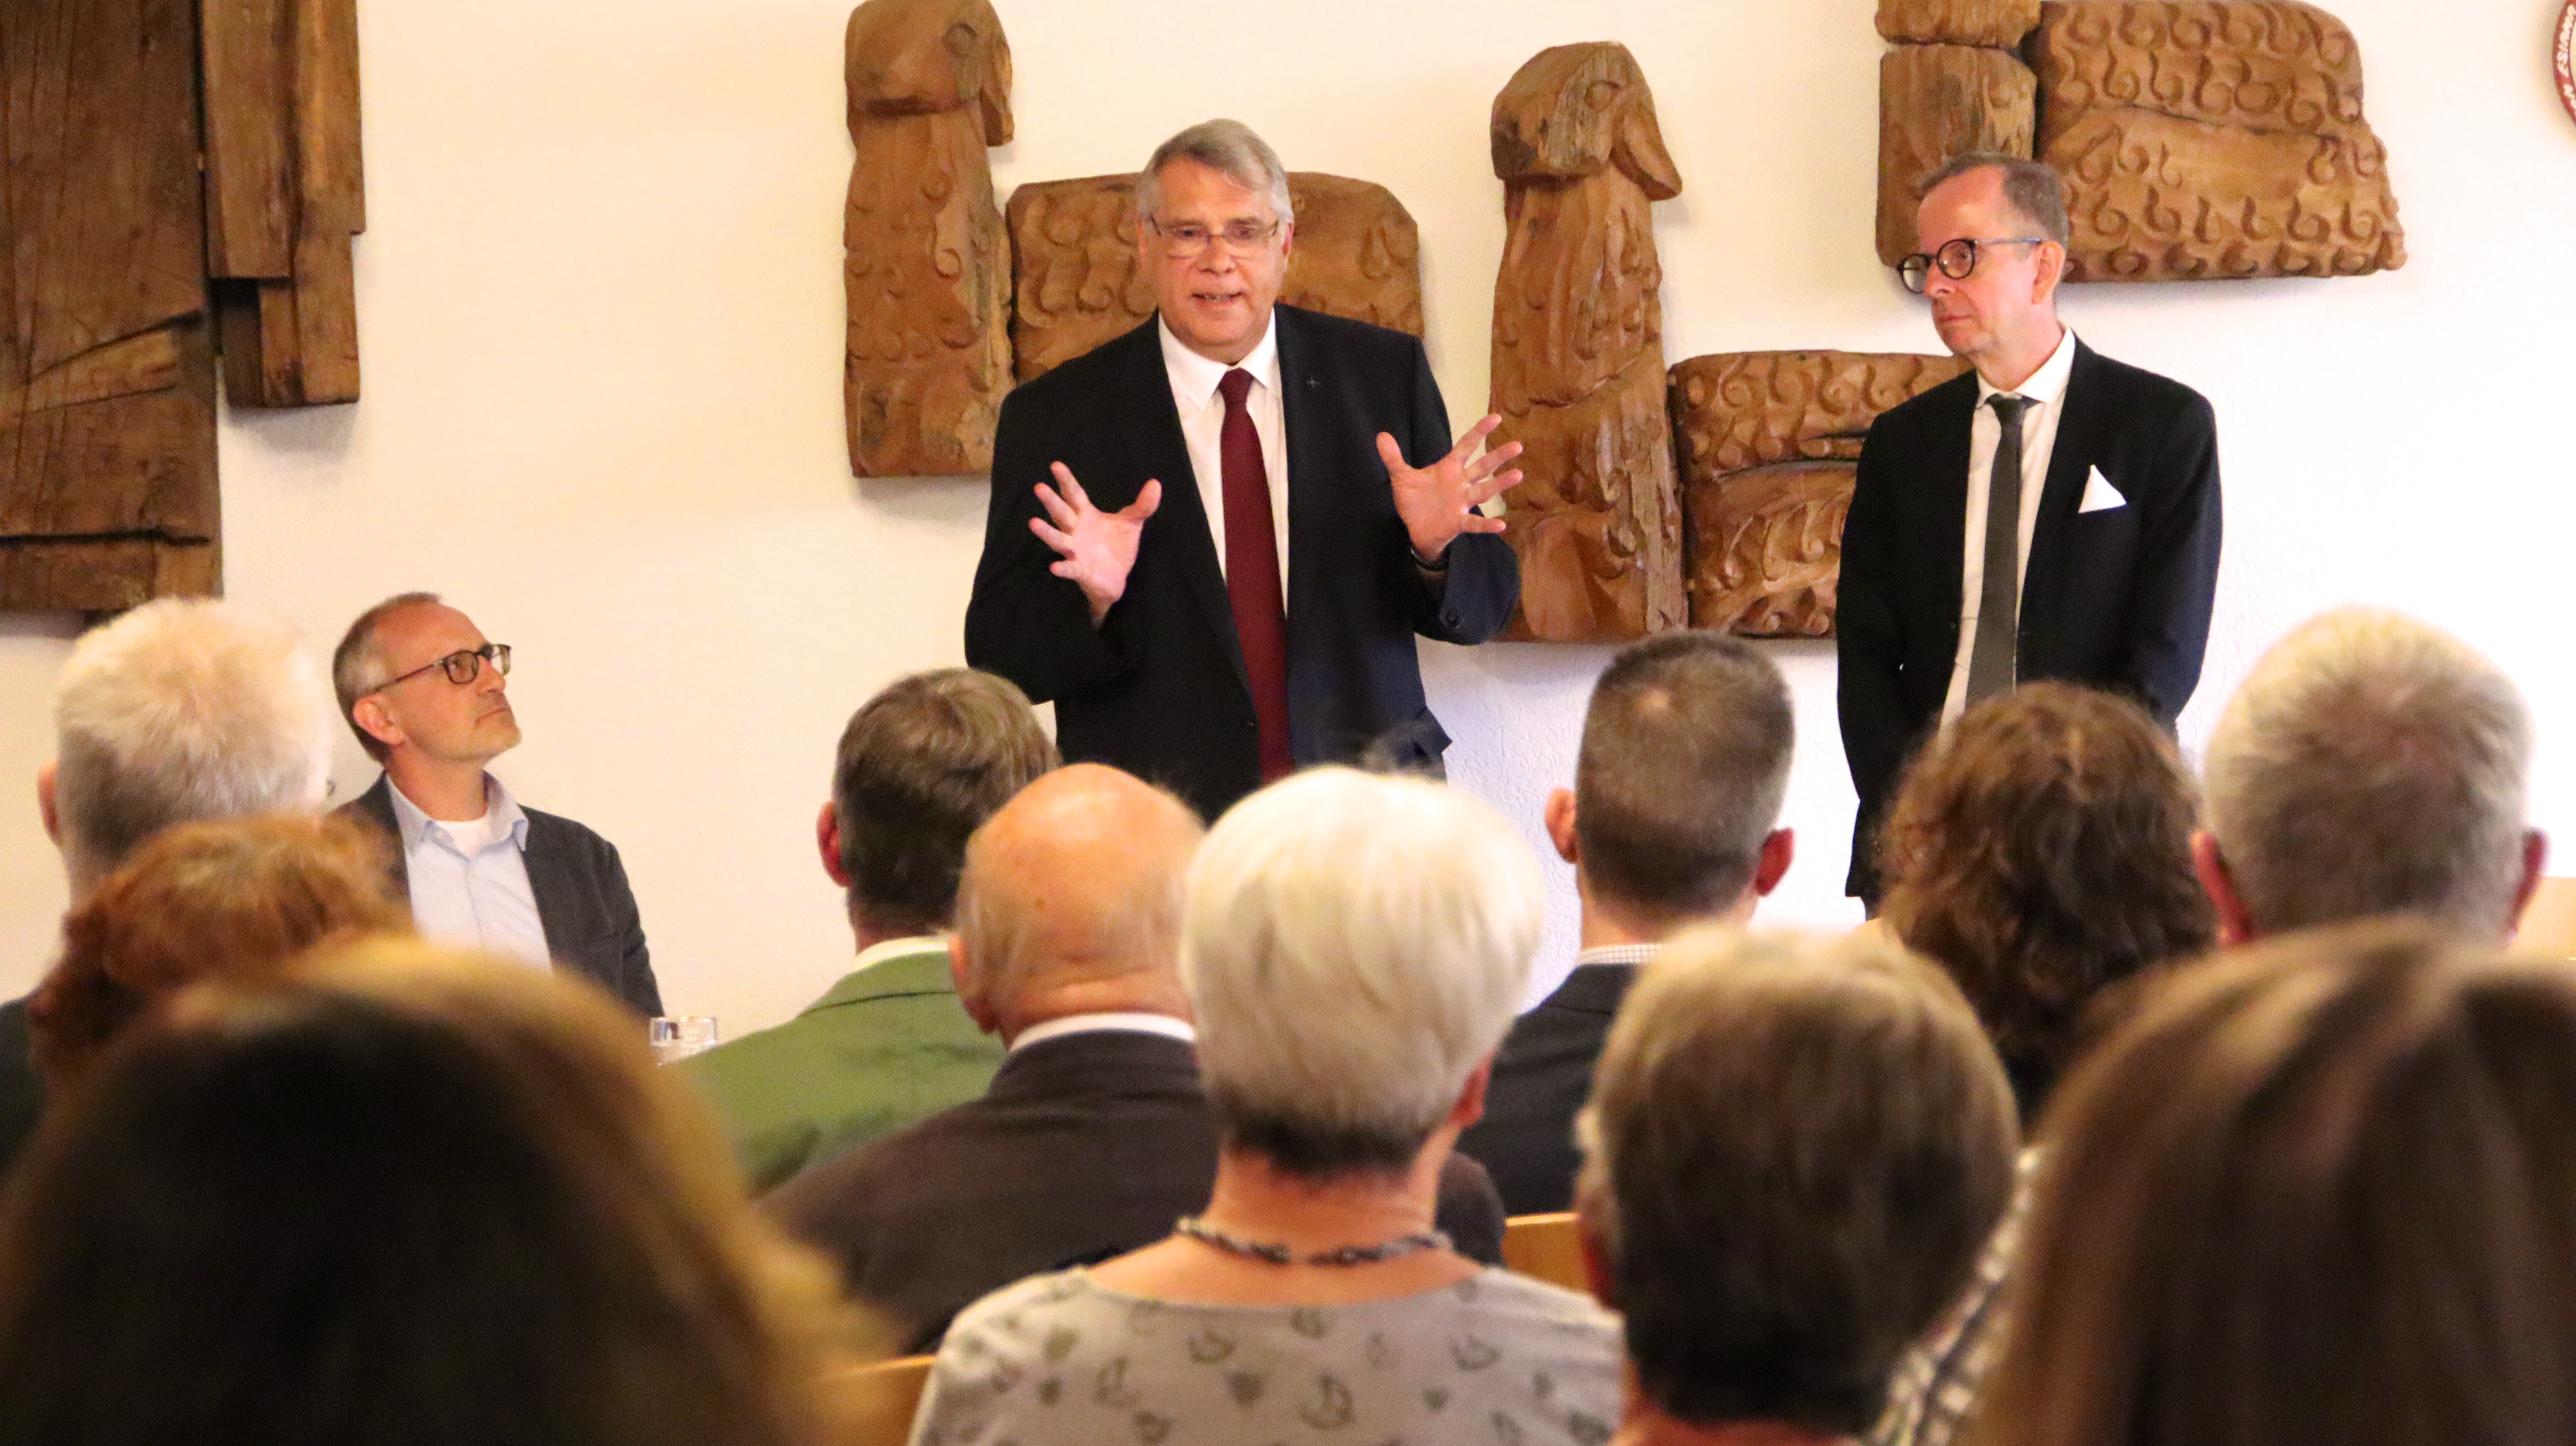 "MIT-reden": Kirchenpräsident Schad stellt sich den Fragen der Besucher (Foto: Schaaf)